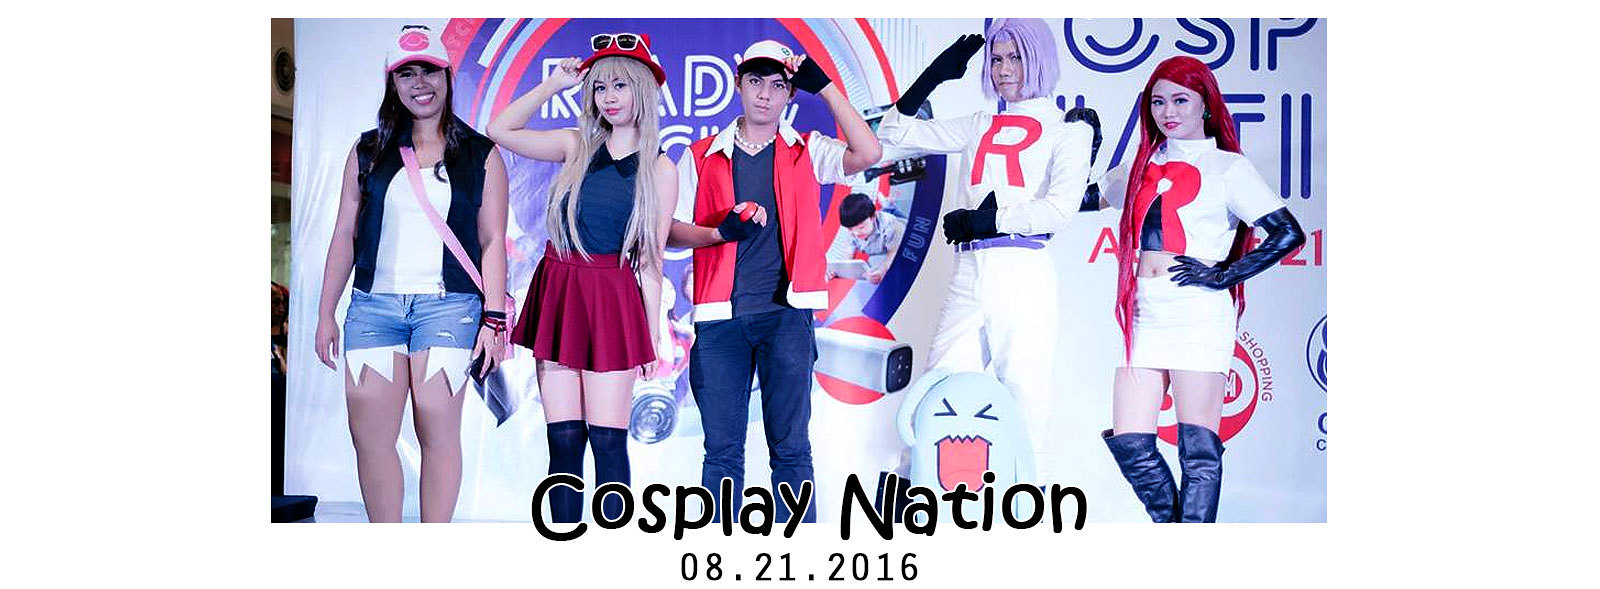 Cosplay Nation at SM Calamba | Pokemon Guesting